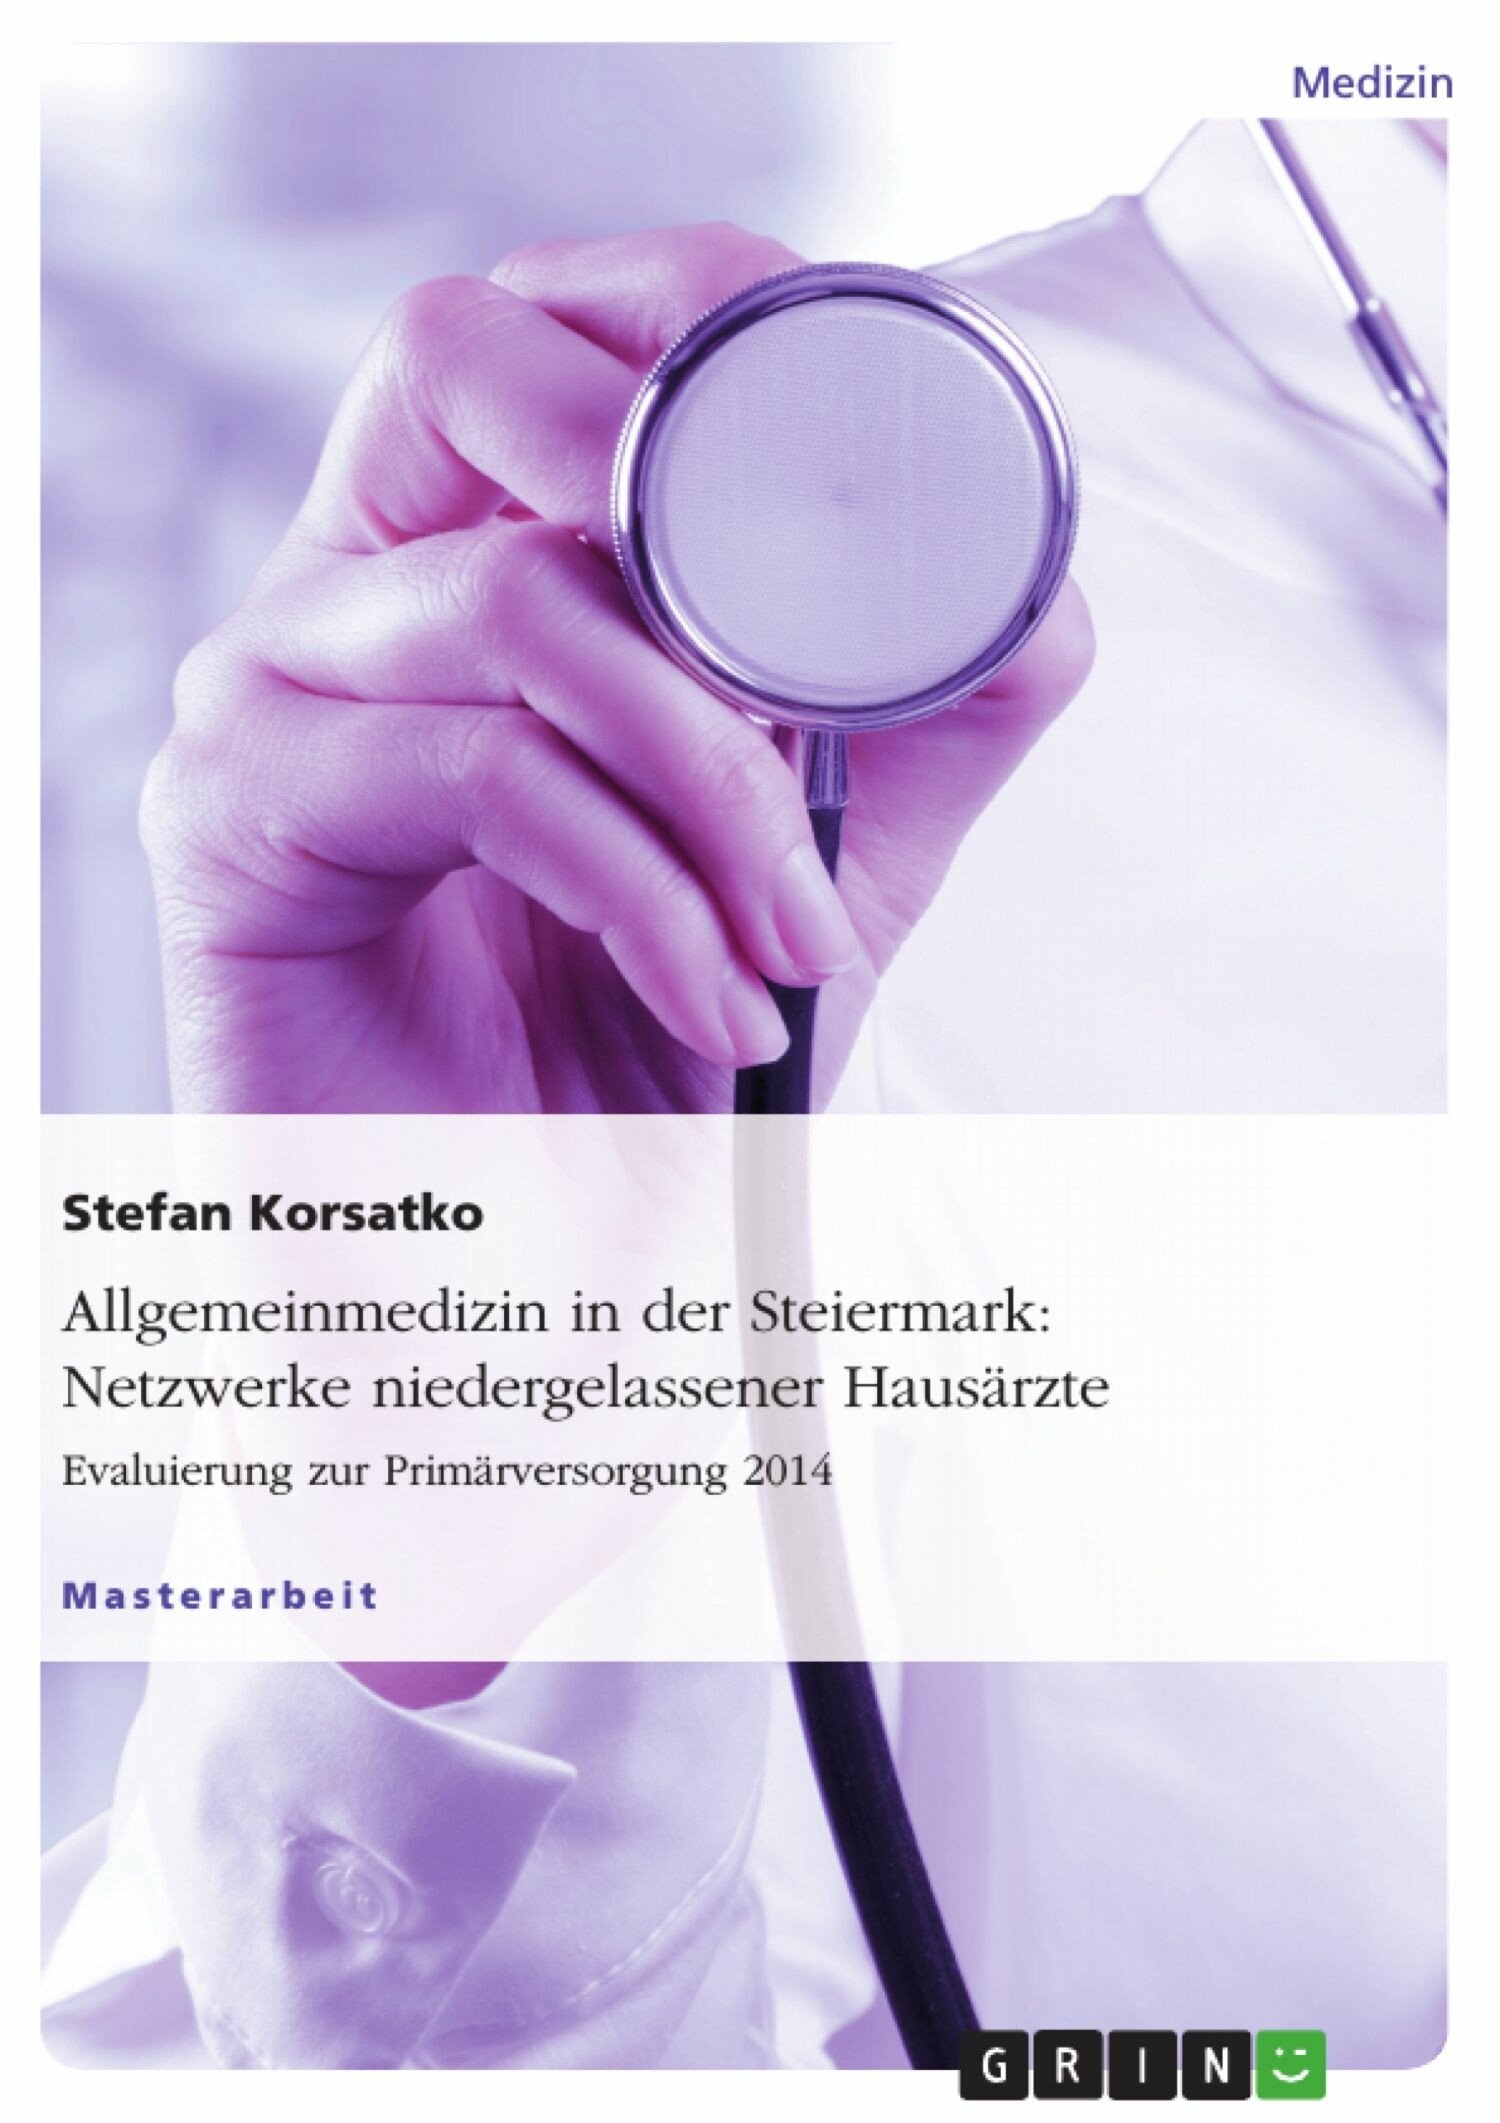 Allgemeinmedizin in der Steiermark: Netzwerke niedergelassener Hausärzte. Evaluierung zur Primärversorgung 2014